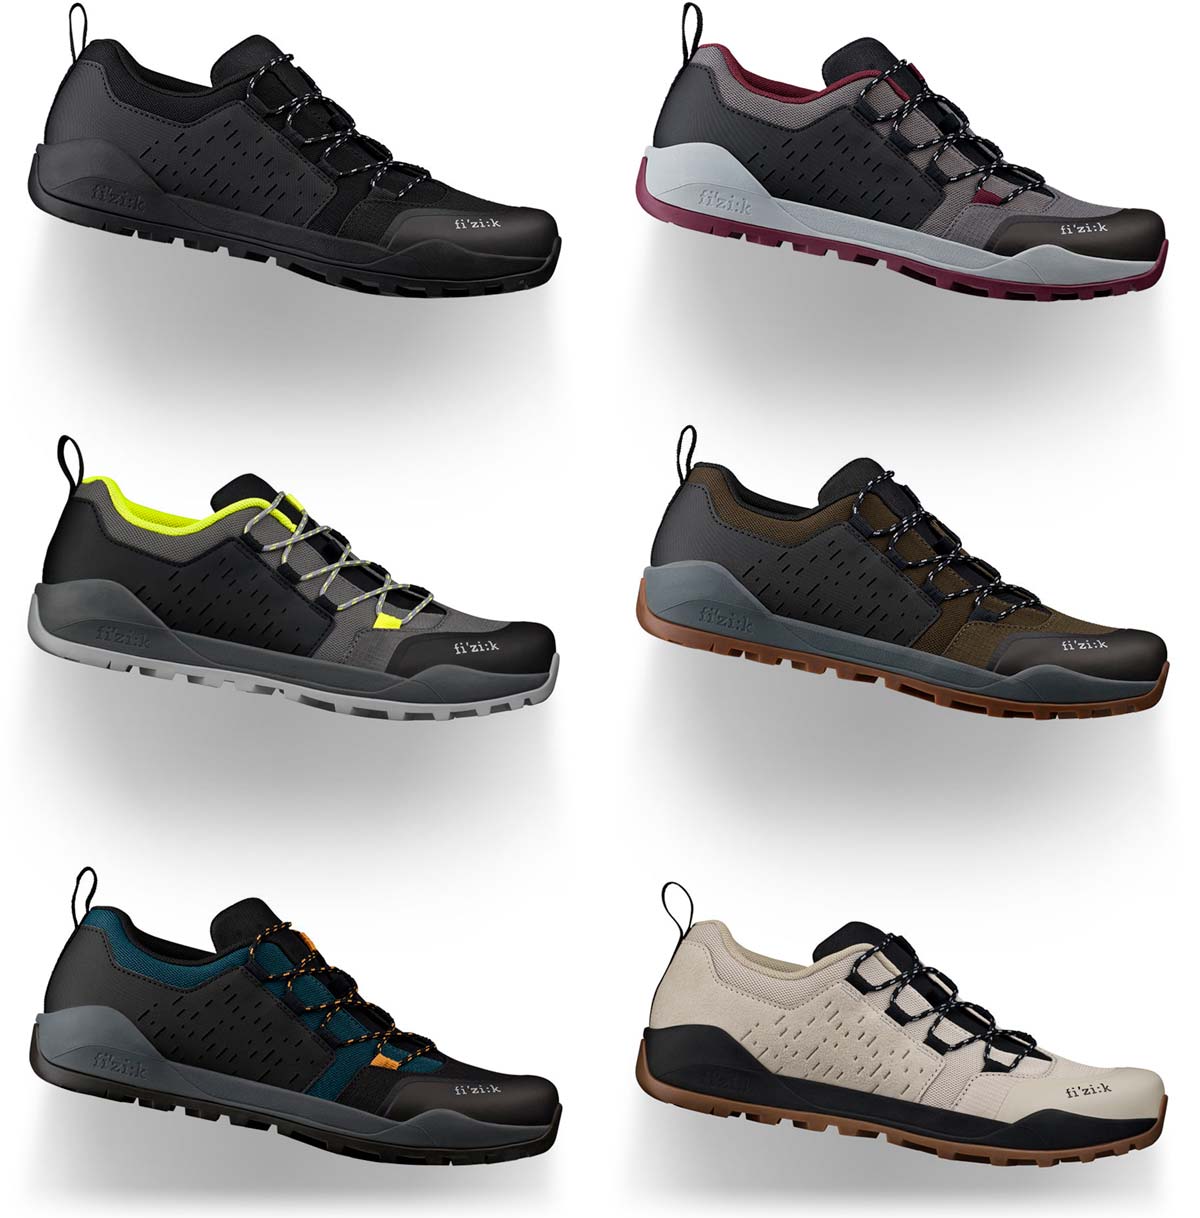 En TodoMountainBike: Fi'zi:k actualiza las zapatillas Terra Ergolace X2 con dos nuevos colores otoñales